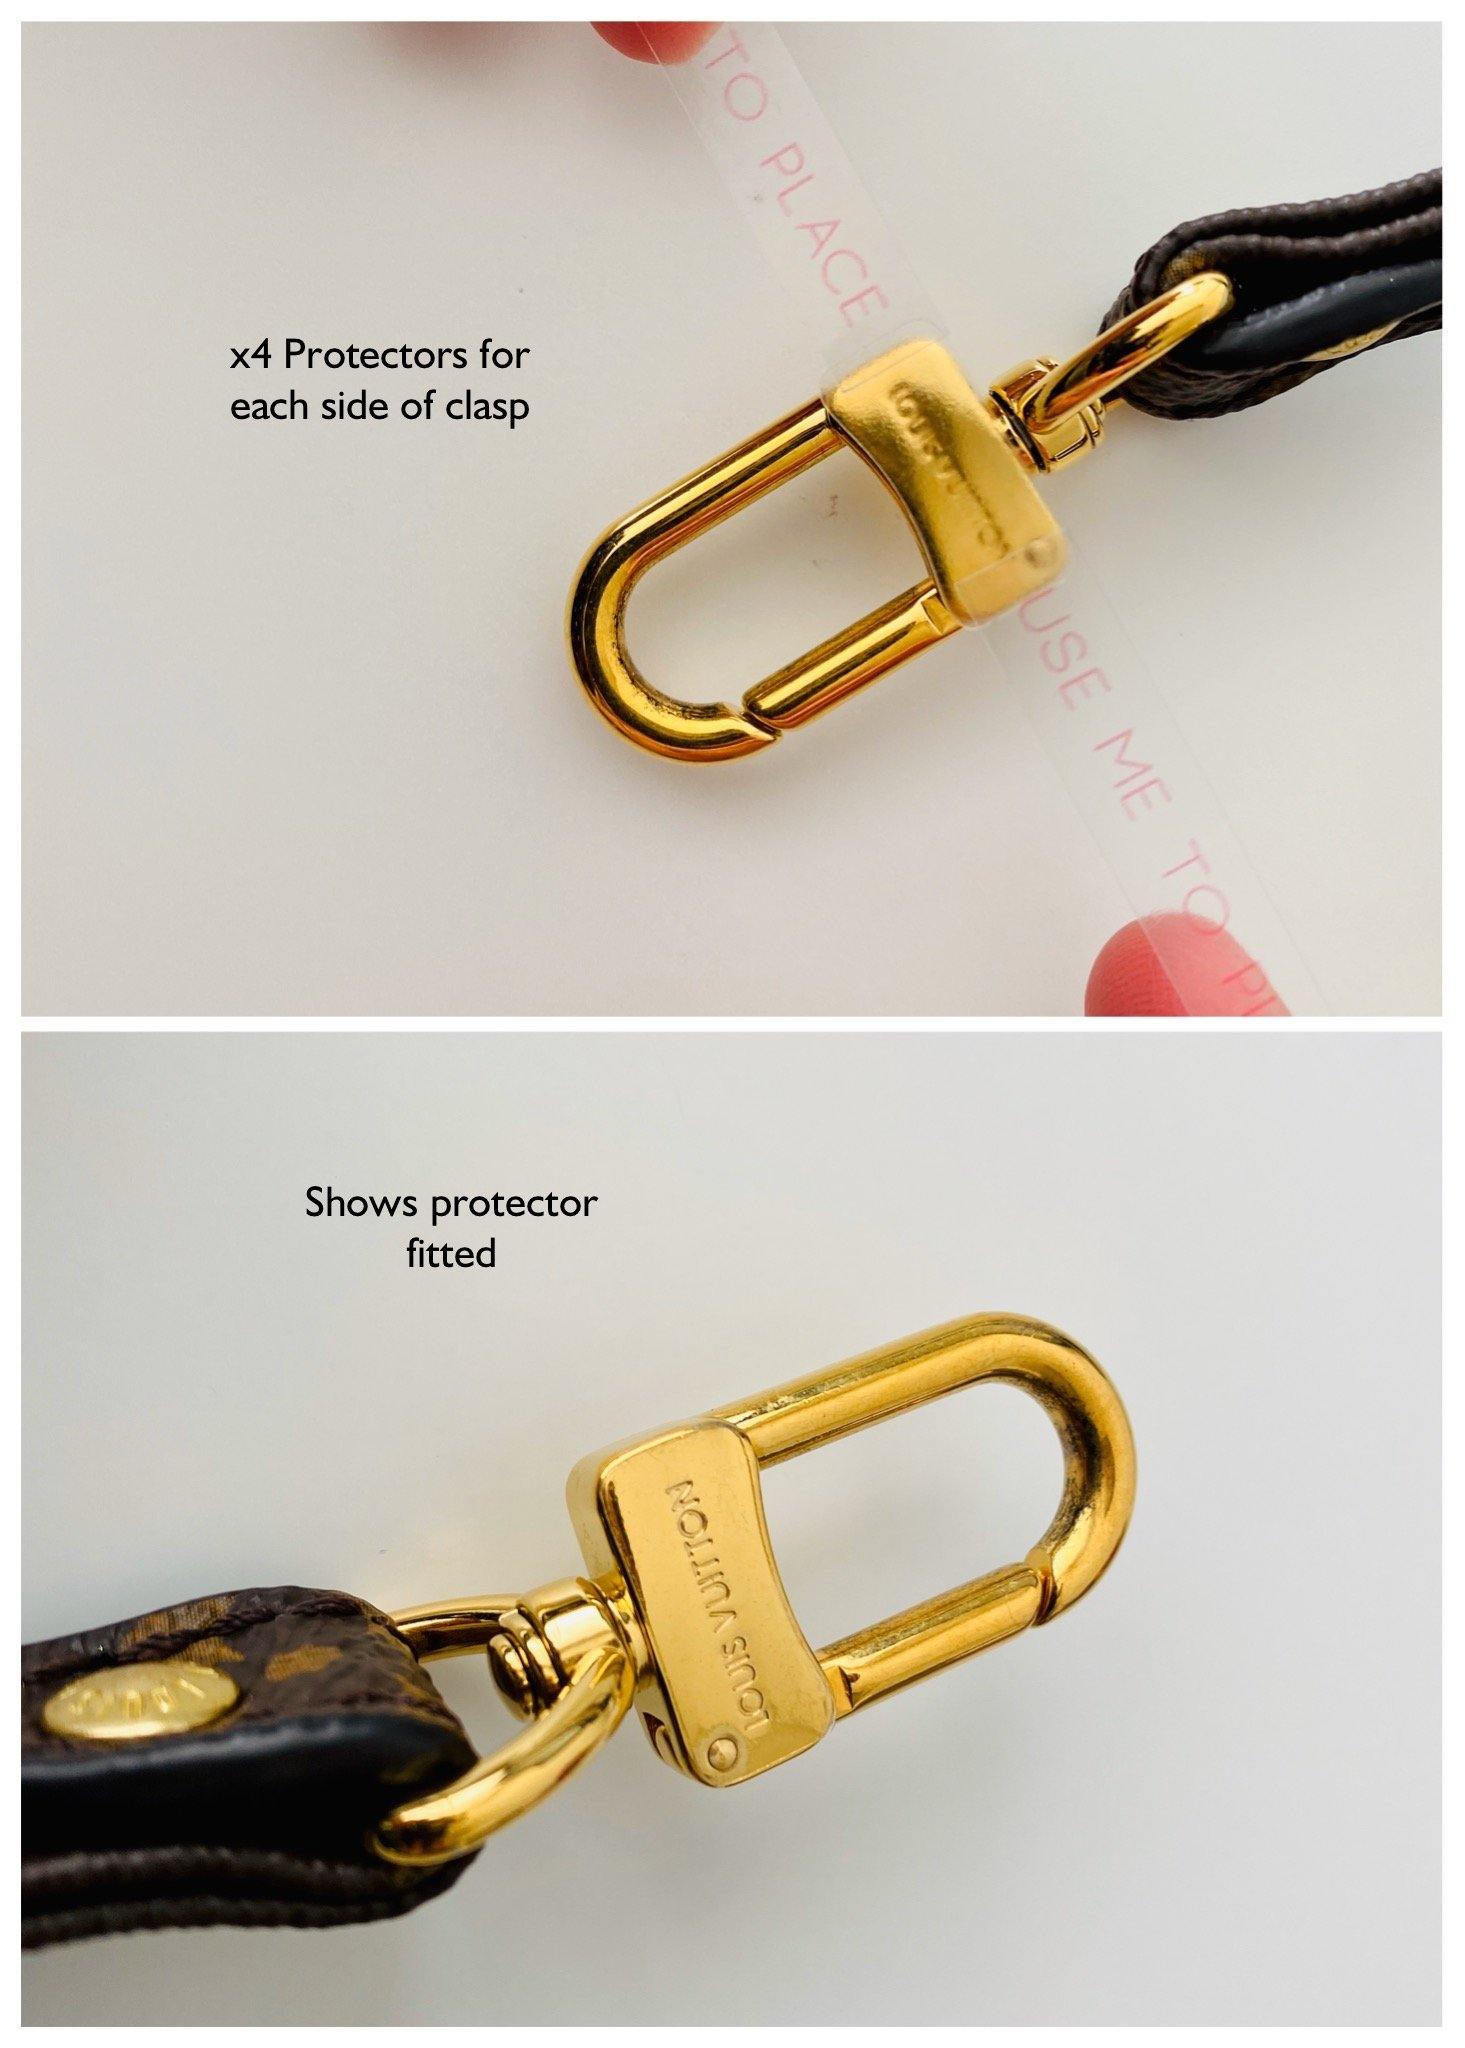 Protectors compatible with Multi Pochette Accessories